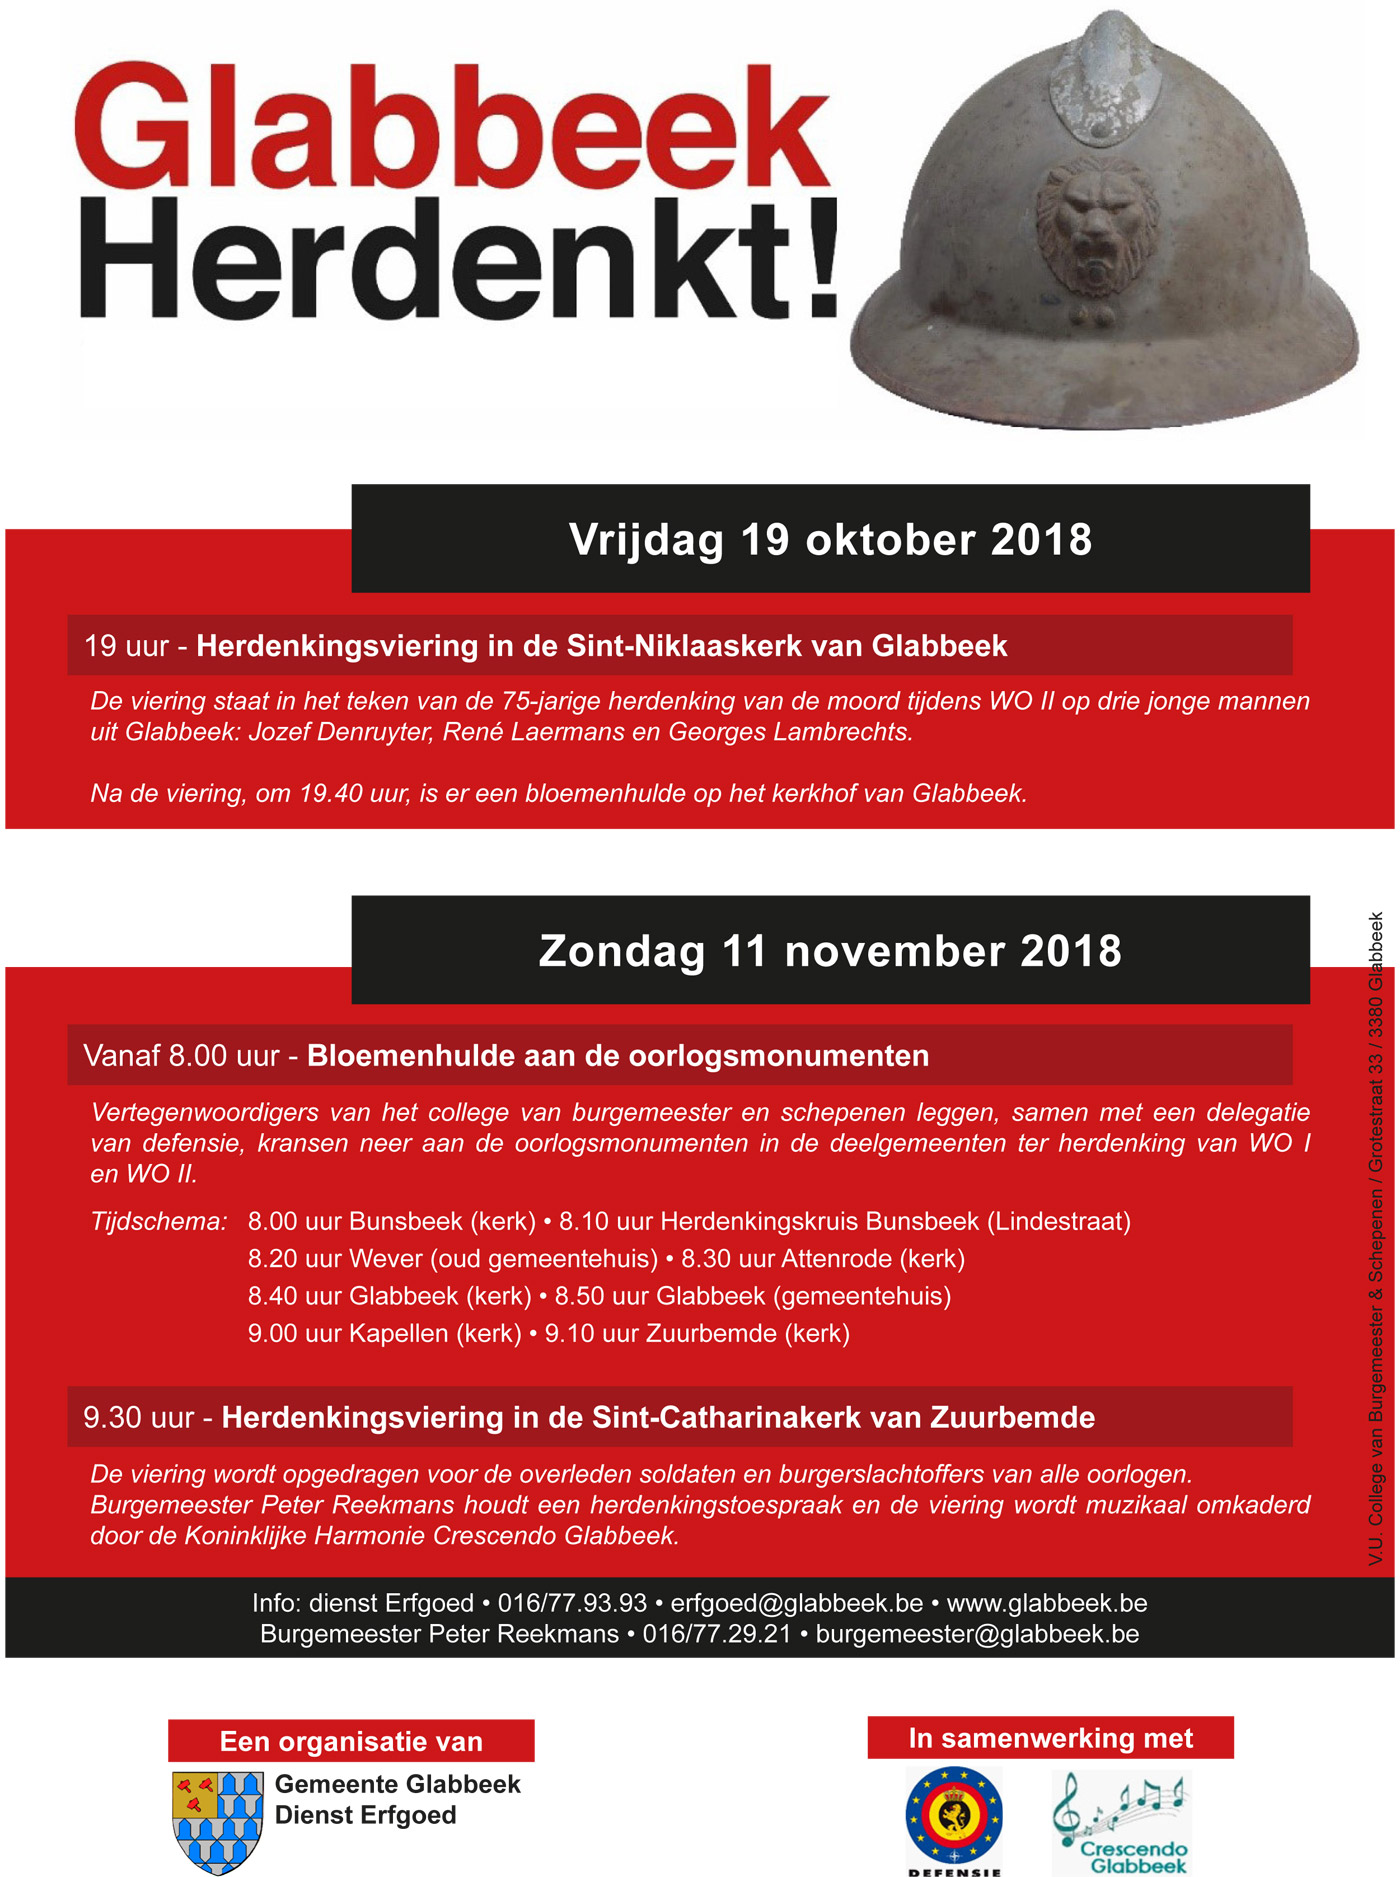 In het kader van Glabbeek Herdenkt organiseren we twee herdenkingen op 19 oktober en 11 november 2018